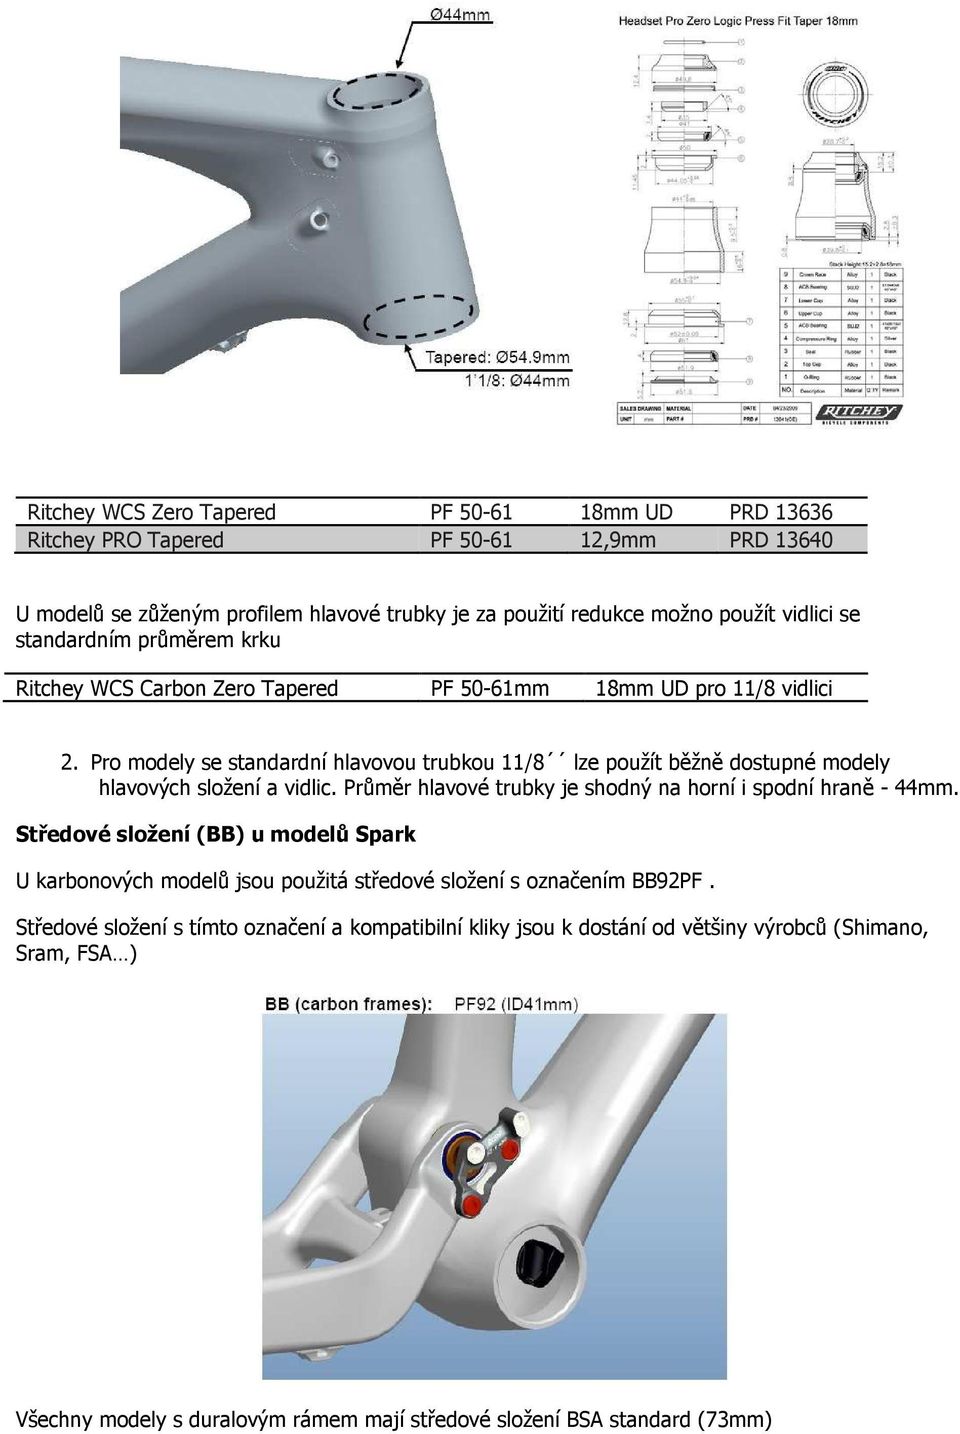 Pro modely se standardní hlavovou trubkou 11/8 lze použít běžně dostupné modely hlavových složení a vidlic. Průměr hlavové trubky je shodný na horní i spodní hraně - 44mm.